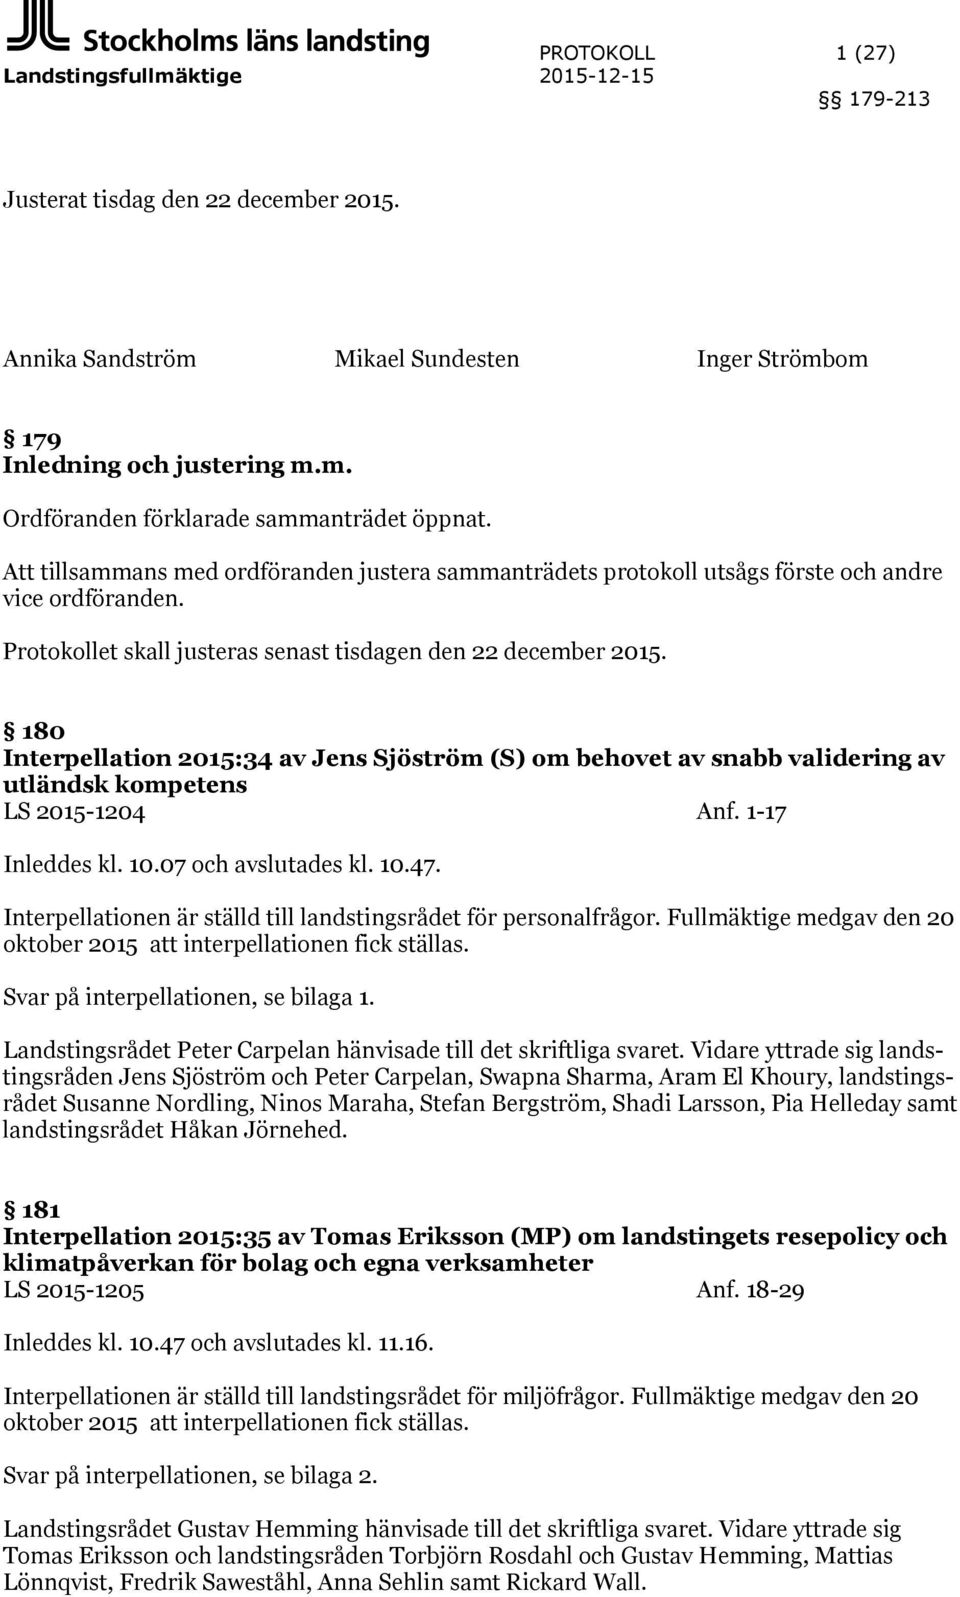 180 Interpellation 2015:34 av Jens Sjöström (S) om behovet av snabb validering av utländsk kompetens LS 2015-1204 Anf. 1-17 Inleddes kl. 10.07 och avslutades kl. 10.47.